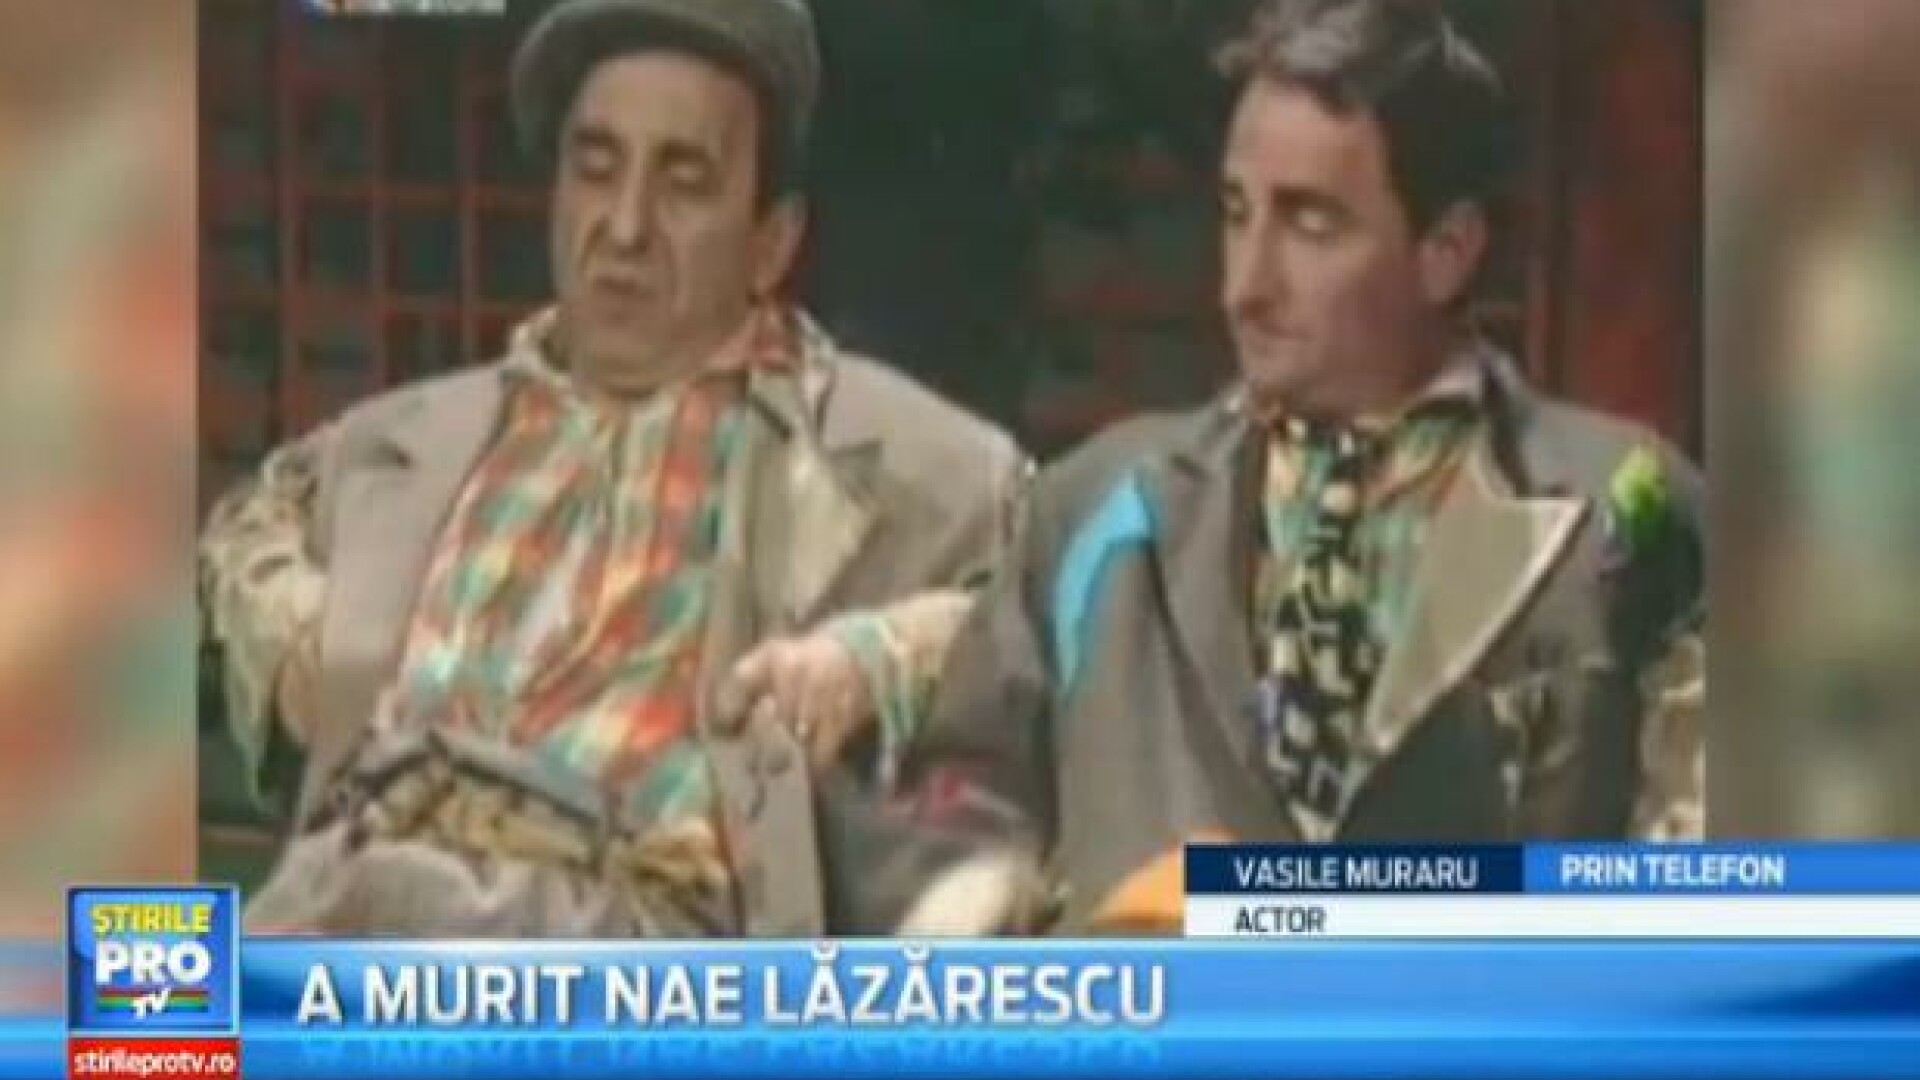 Nae Lazarescu